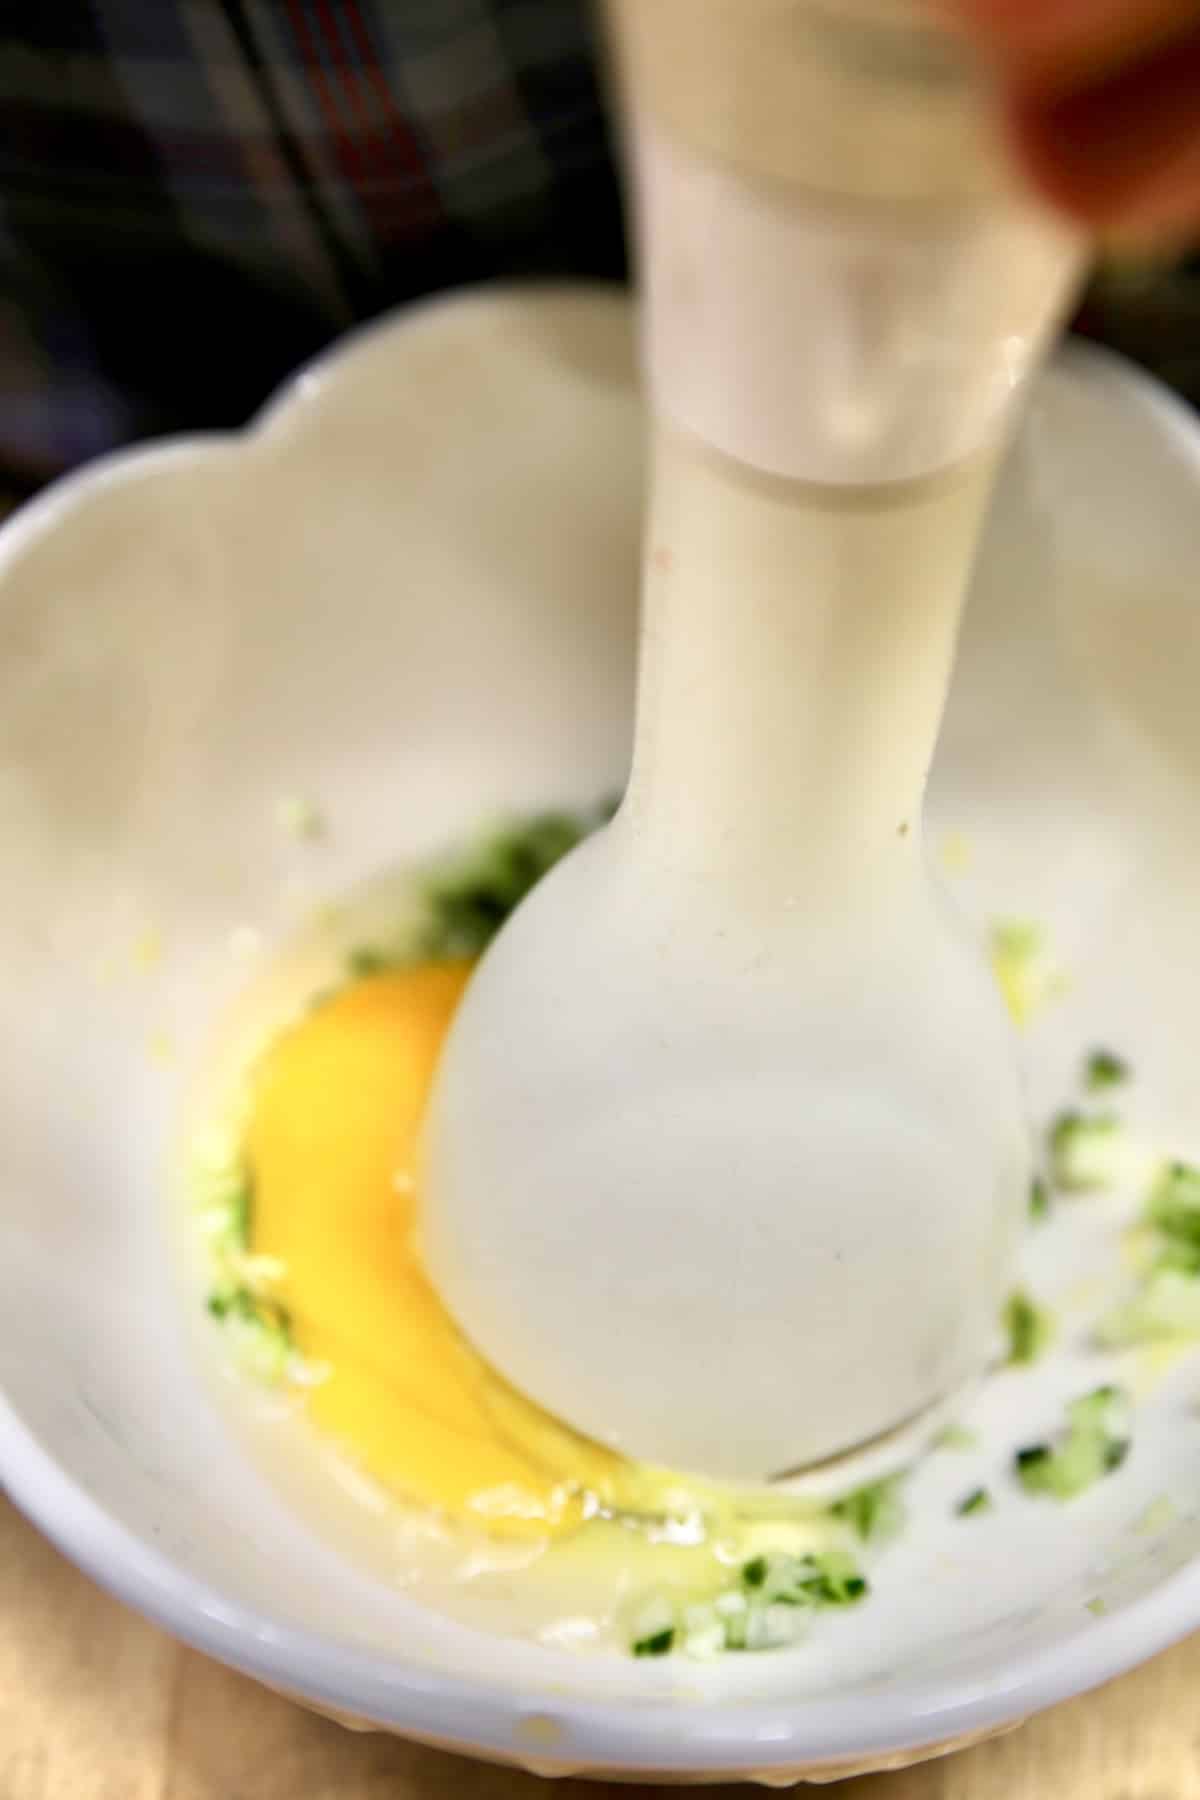 Blending egg for homemade mayo with stick blender.